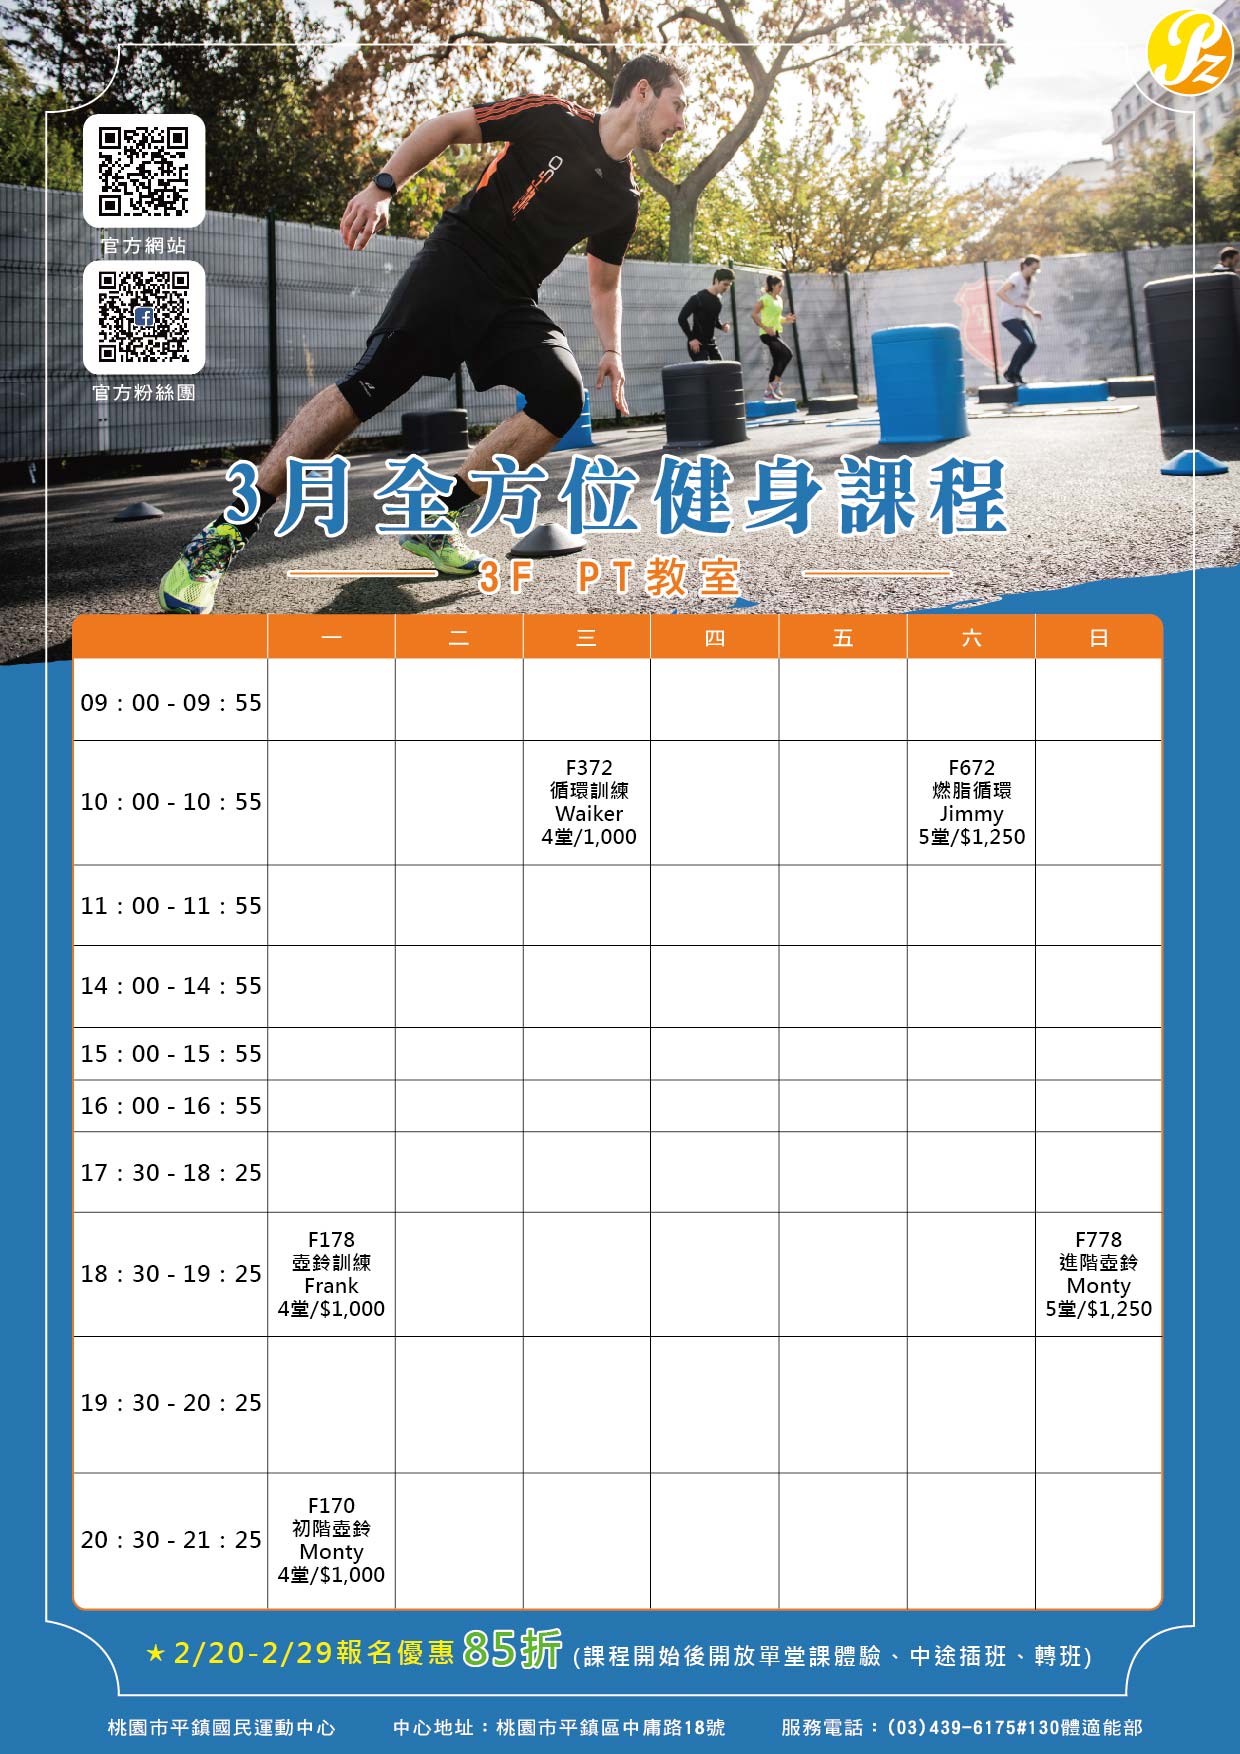 3月全方位健身課程_3F PT教室